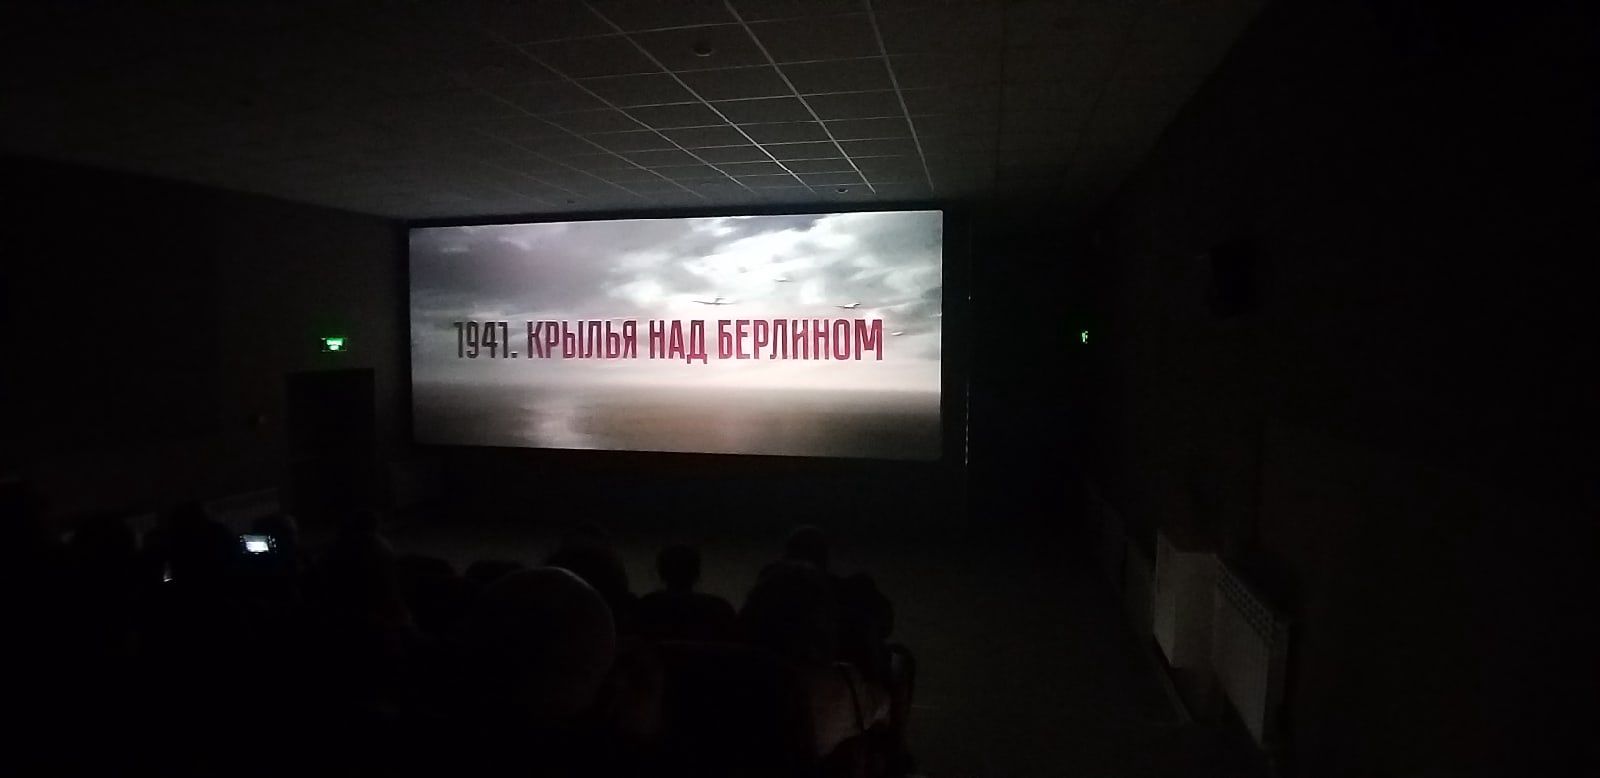 Обновленный цифровой кинозал российского уровня открылся в Мензелинске